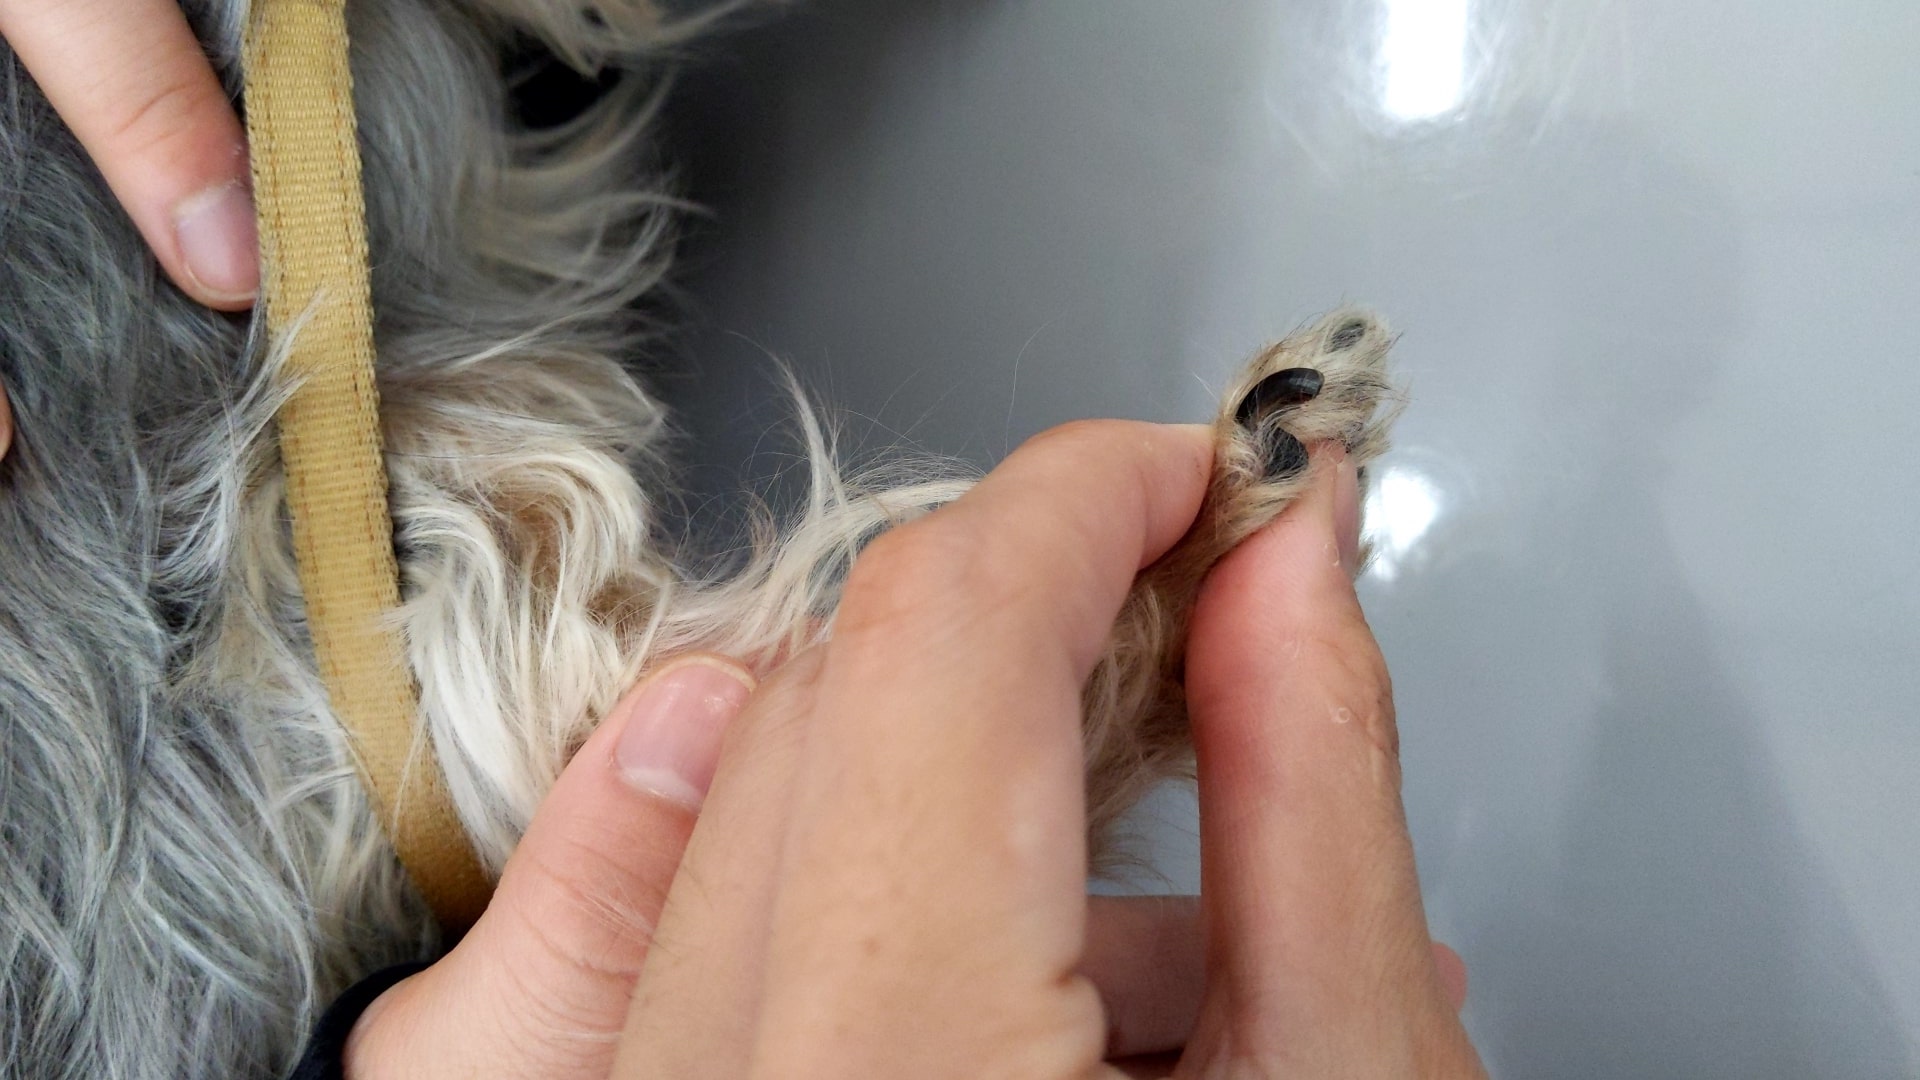 初心者向け 犬の爪切りの方法を出血時の対応やコツも含めて解説 たかつきユア動物病院 高槻市栄町 犬 猫専門 ワクチン 健康診断も対応